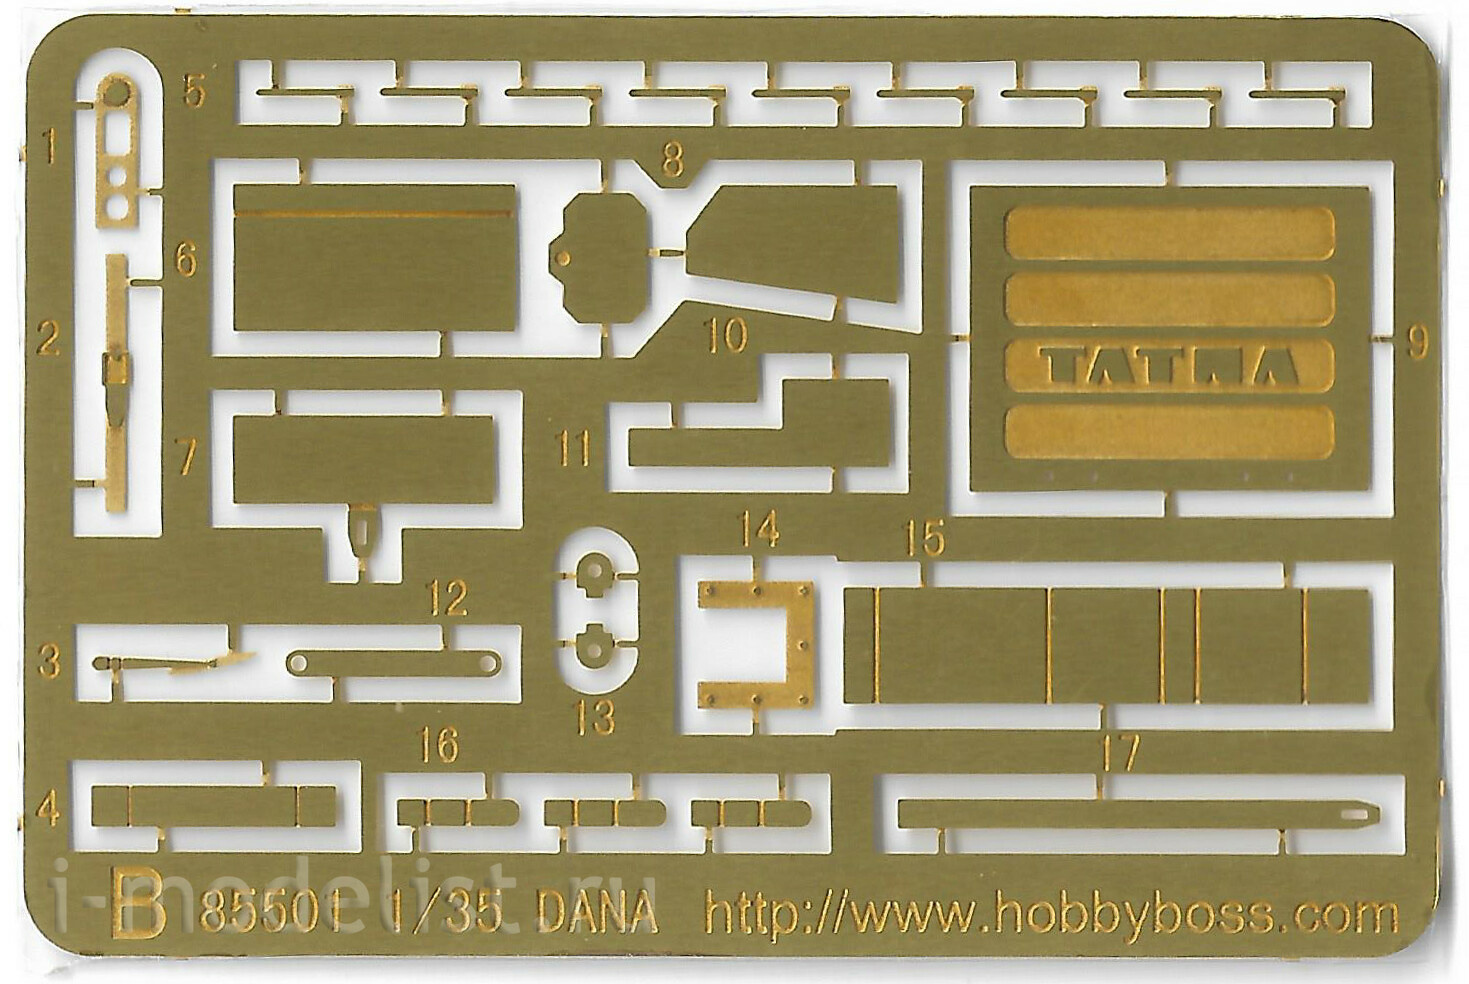 HobbyBoss 1/35 85501 152mm ShkH DANA vz.Seventy seven